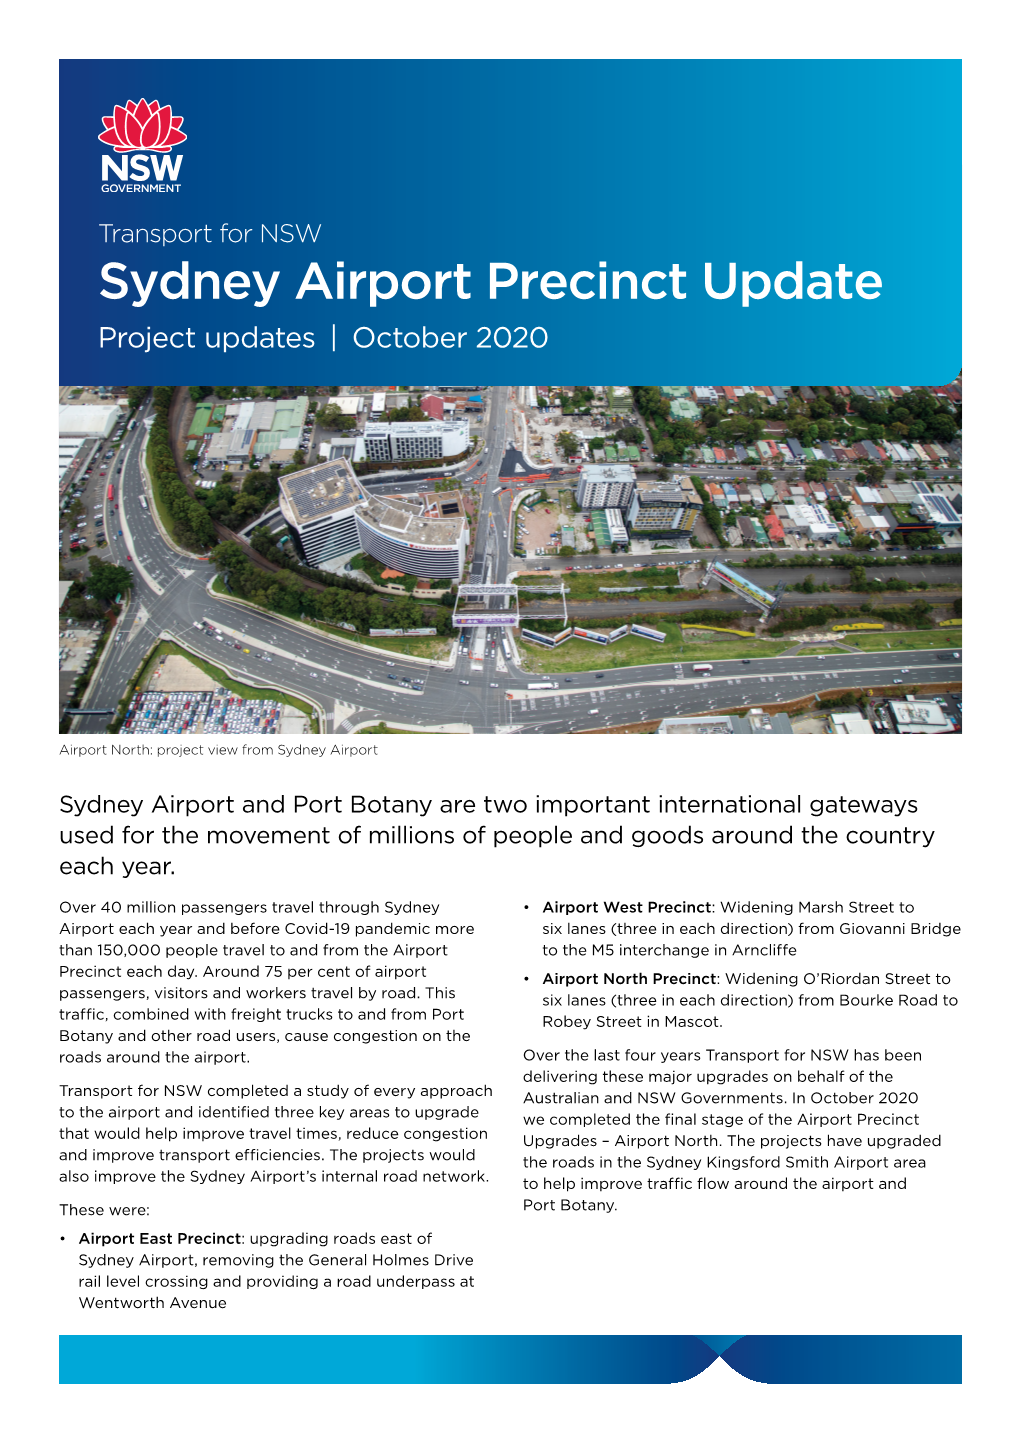 Sydney Airport Precinct Update Project Updates | October 2020